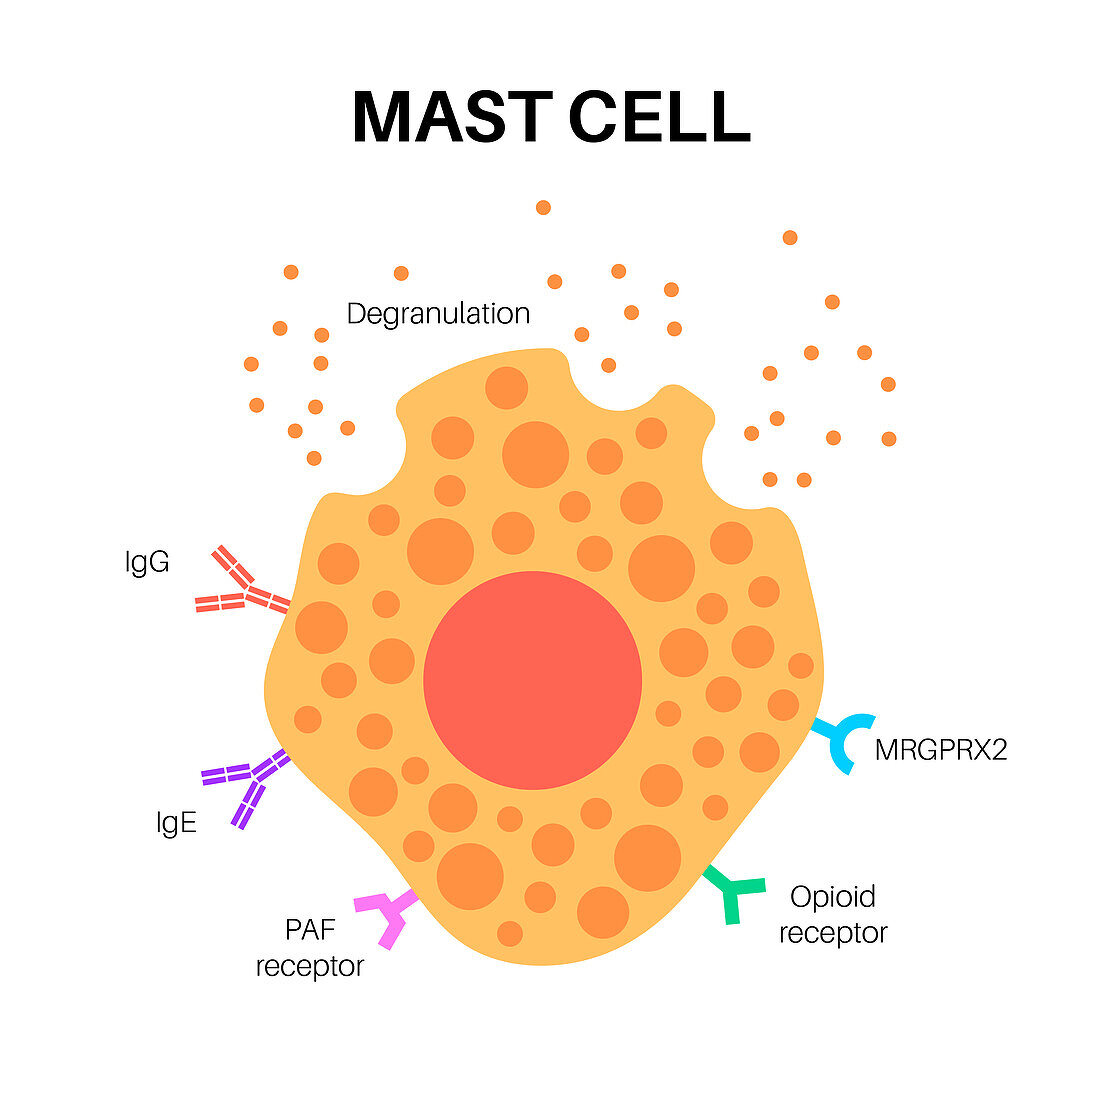 Mast cell, illustration